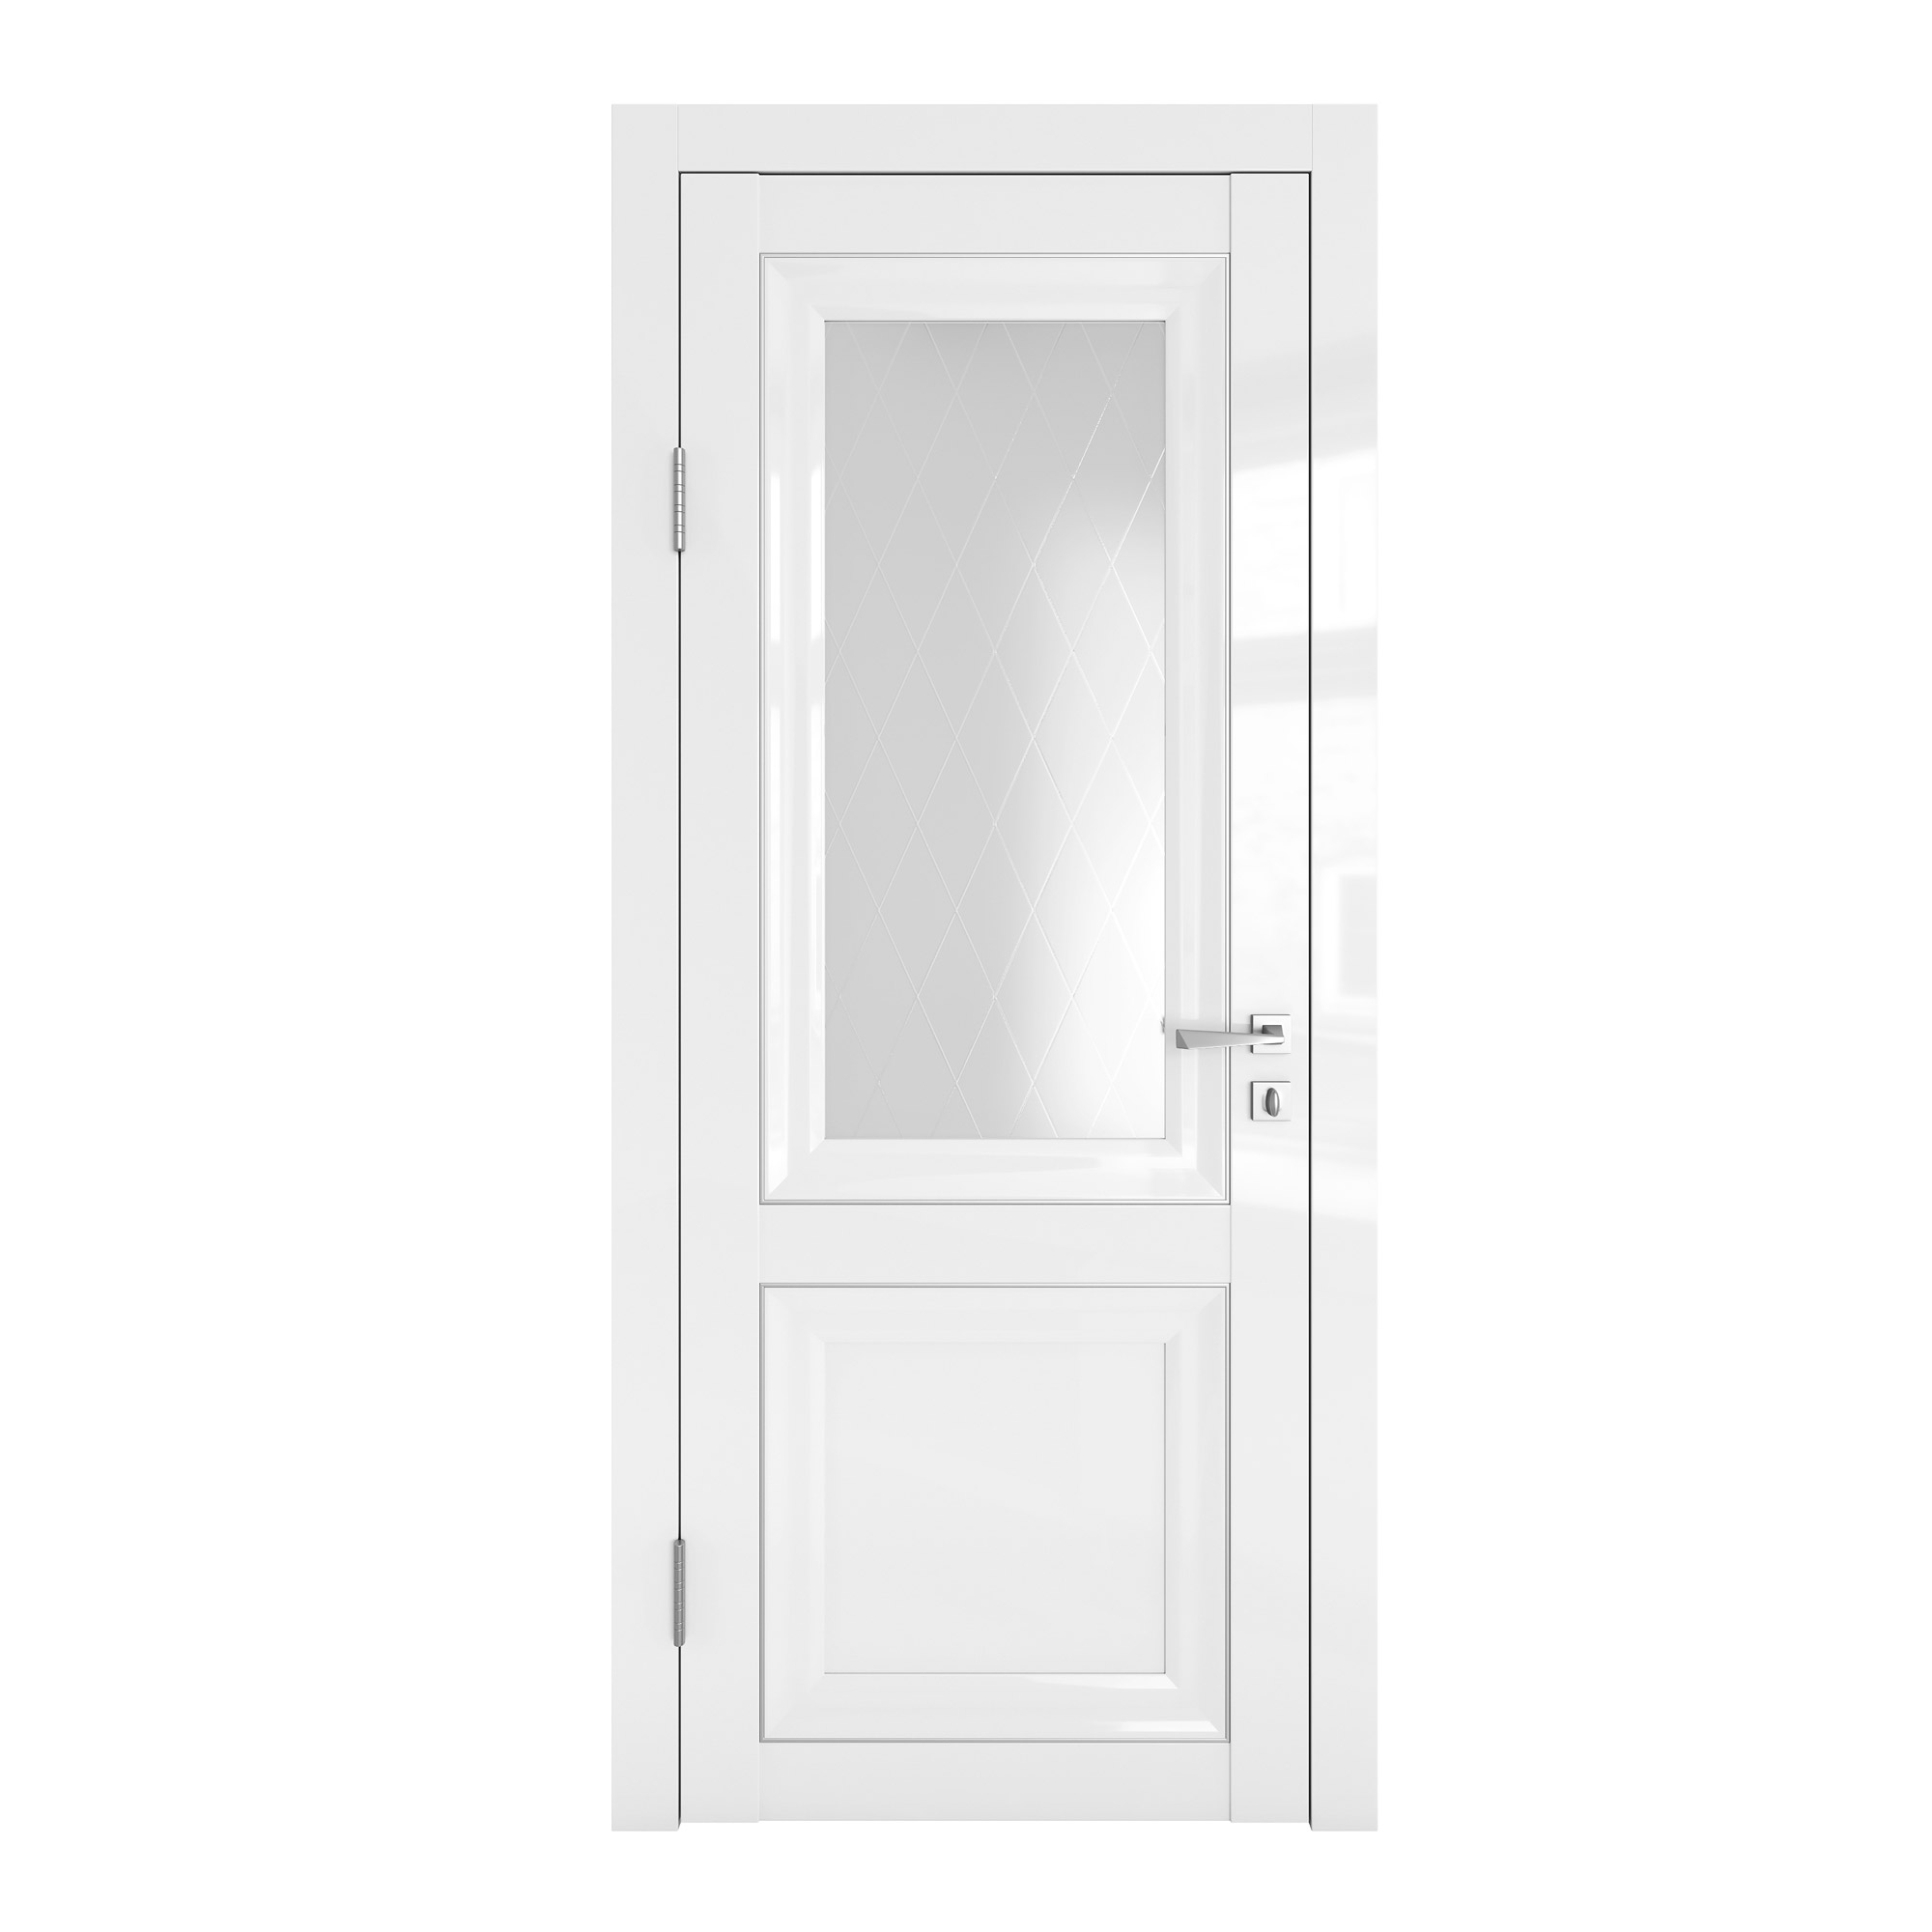 фото Межкомнатная дверь до-пг2 белый глянец/стекло ромб 200х60 дверная линия